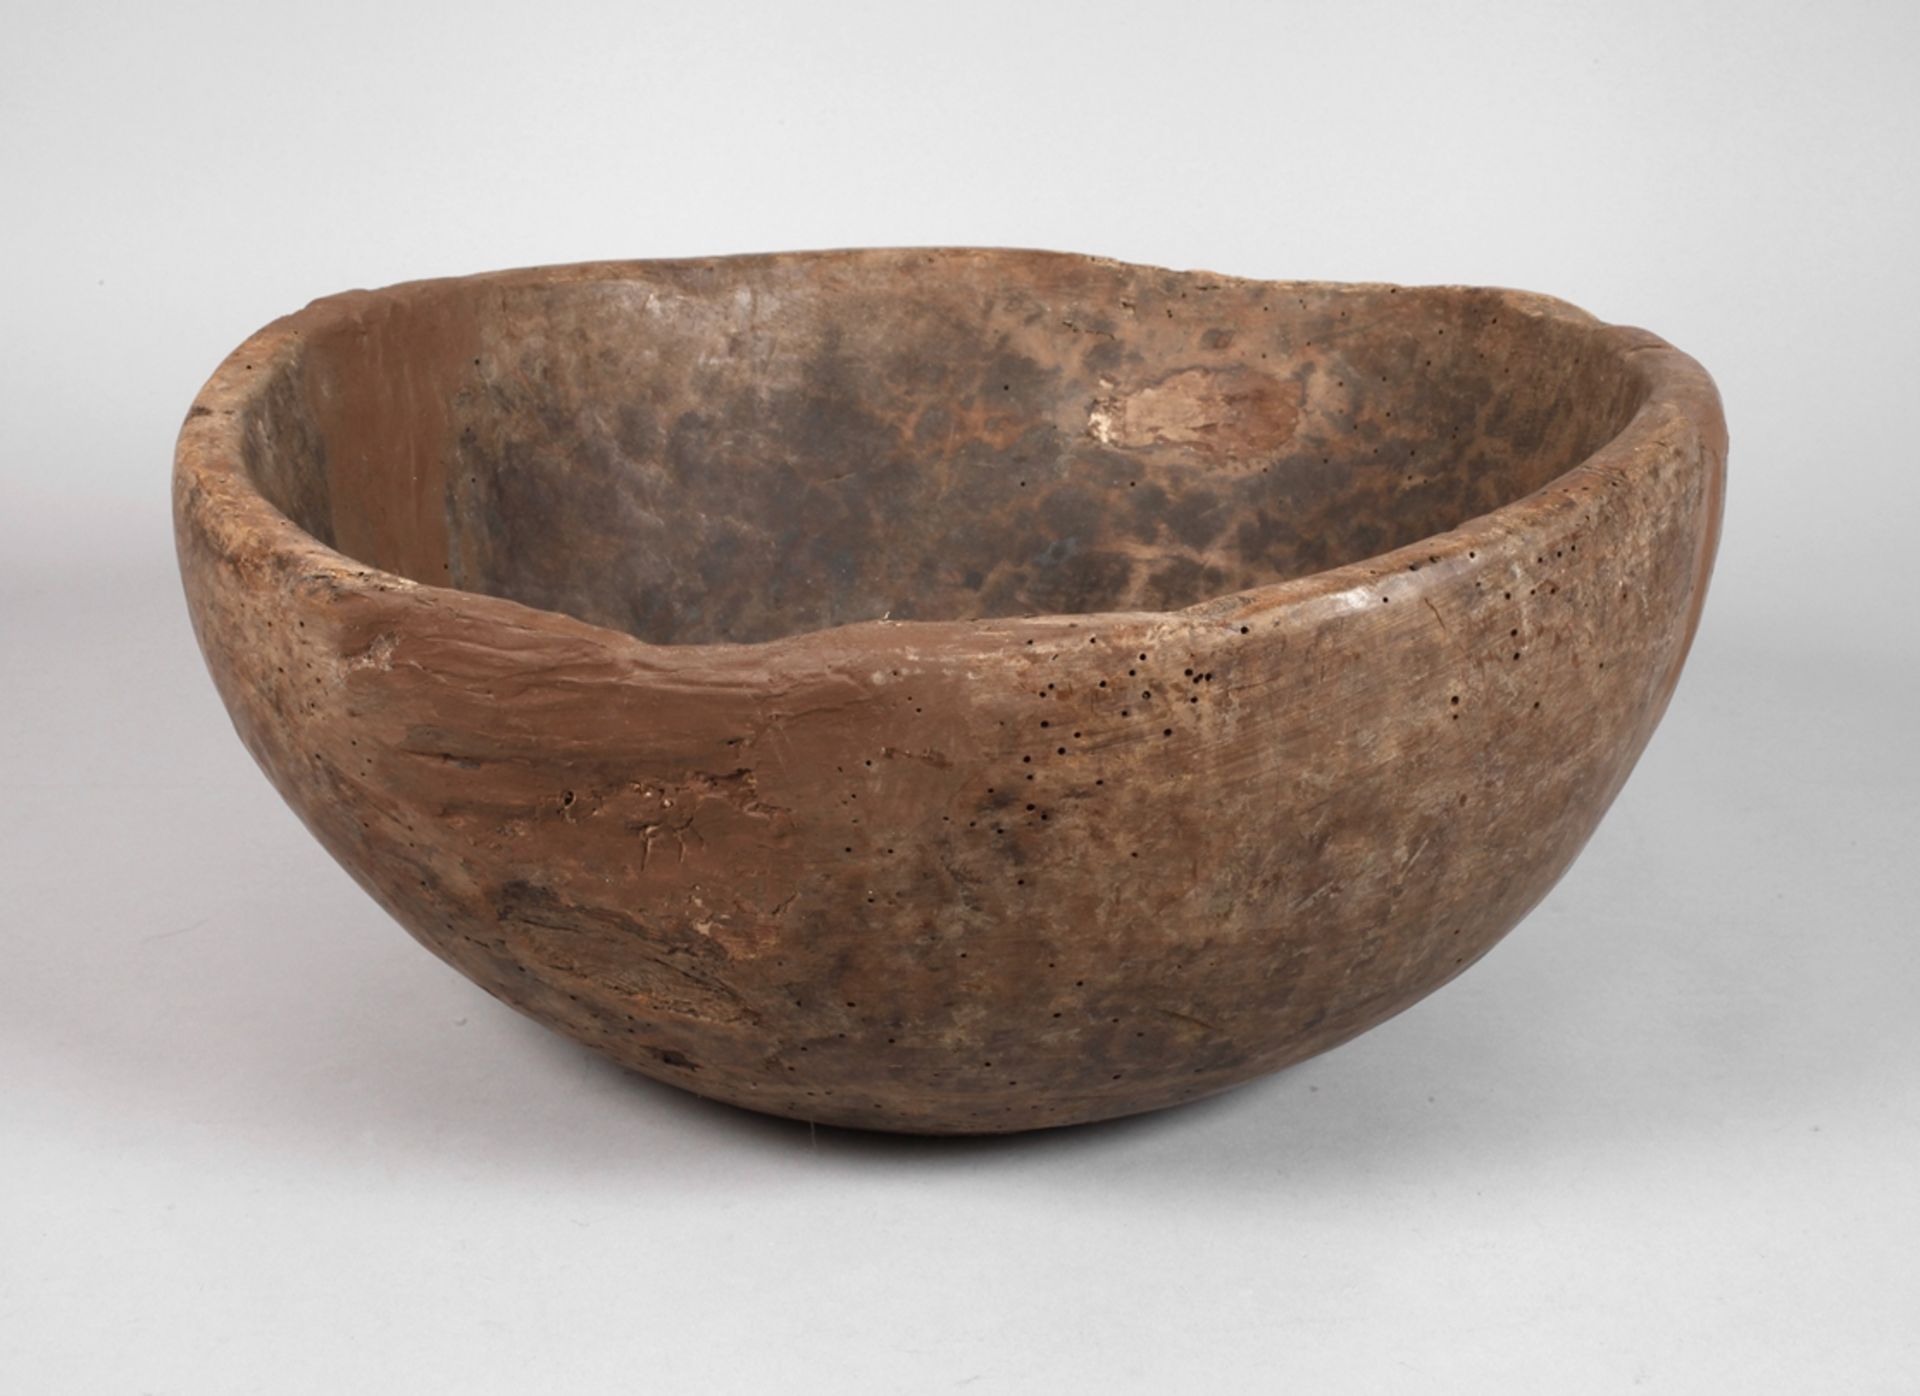 Rustic bowl